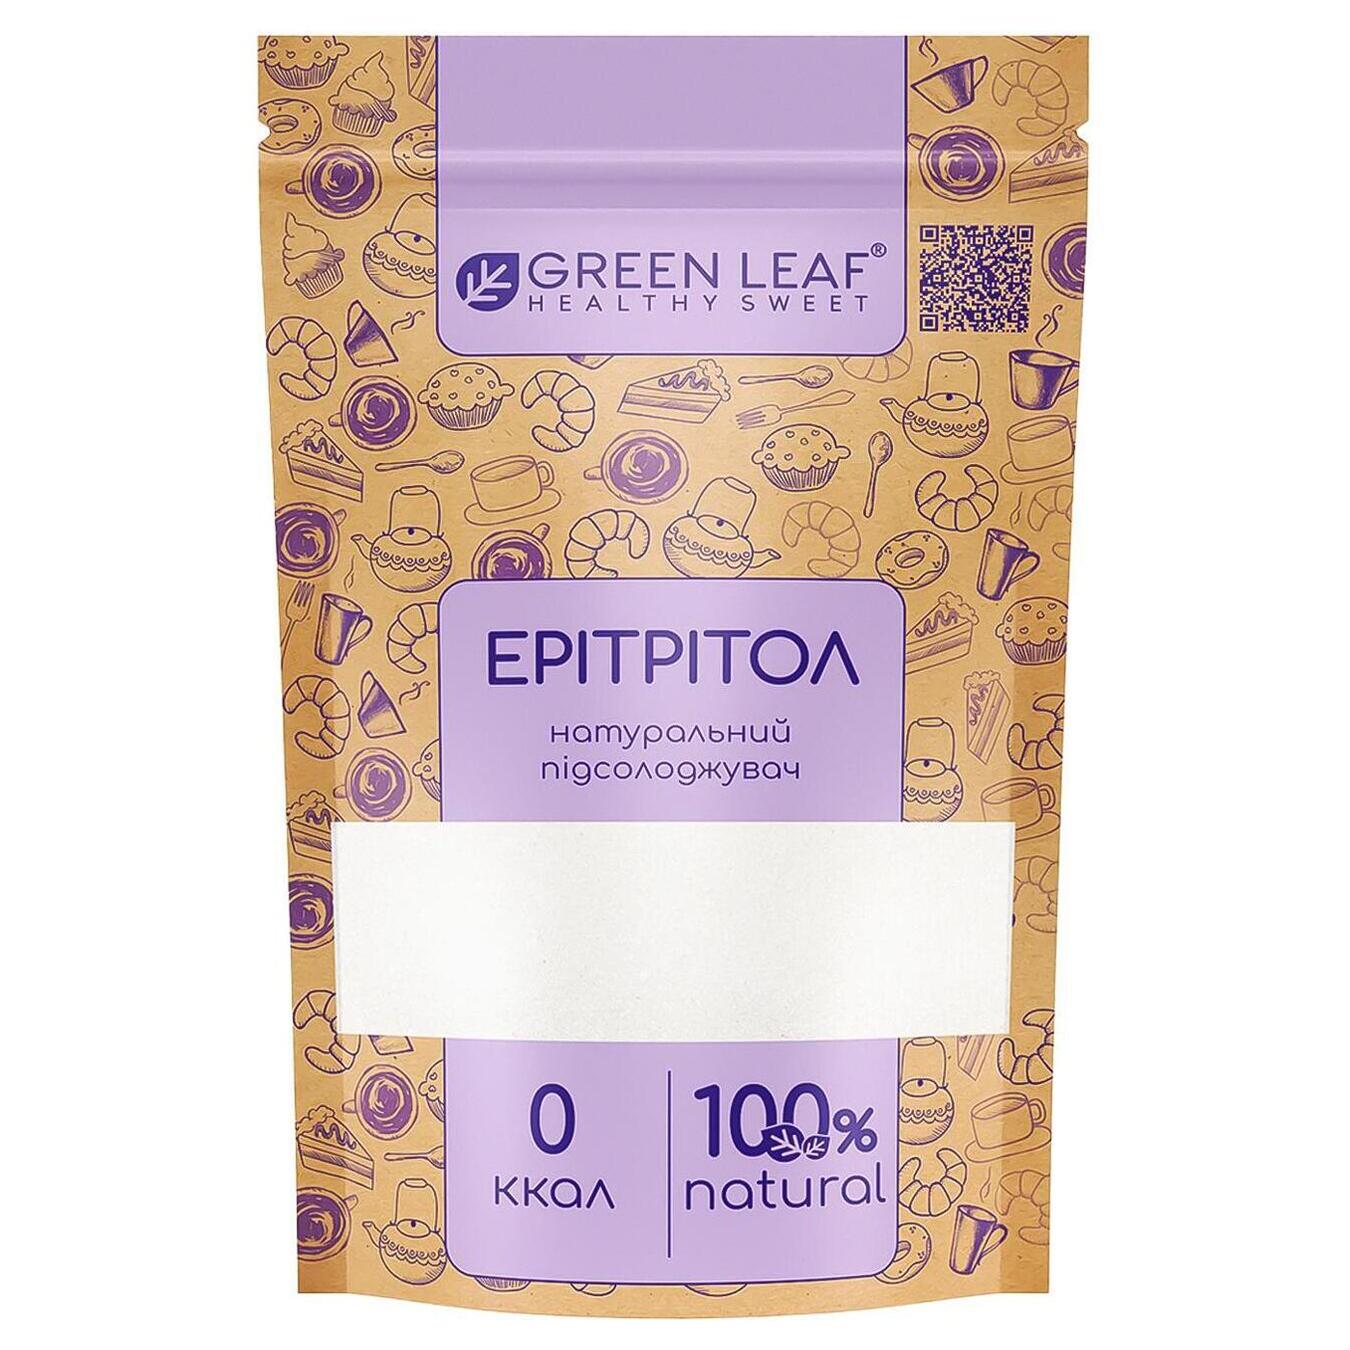 Sugar substitute Green Leaf erythritol 500g